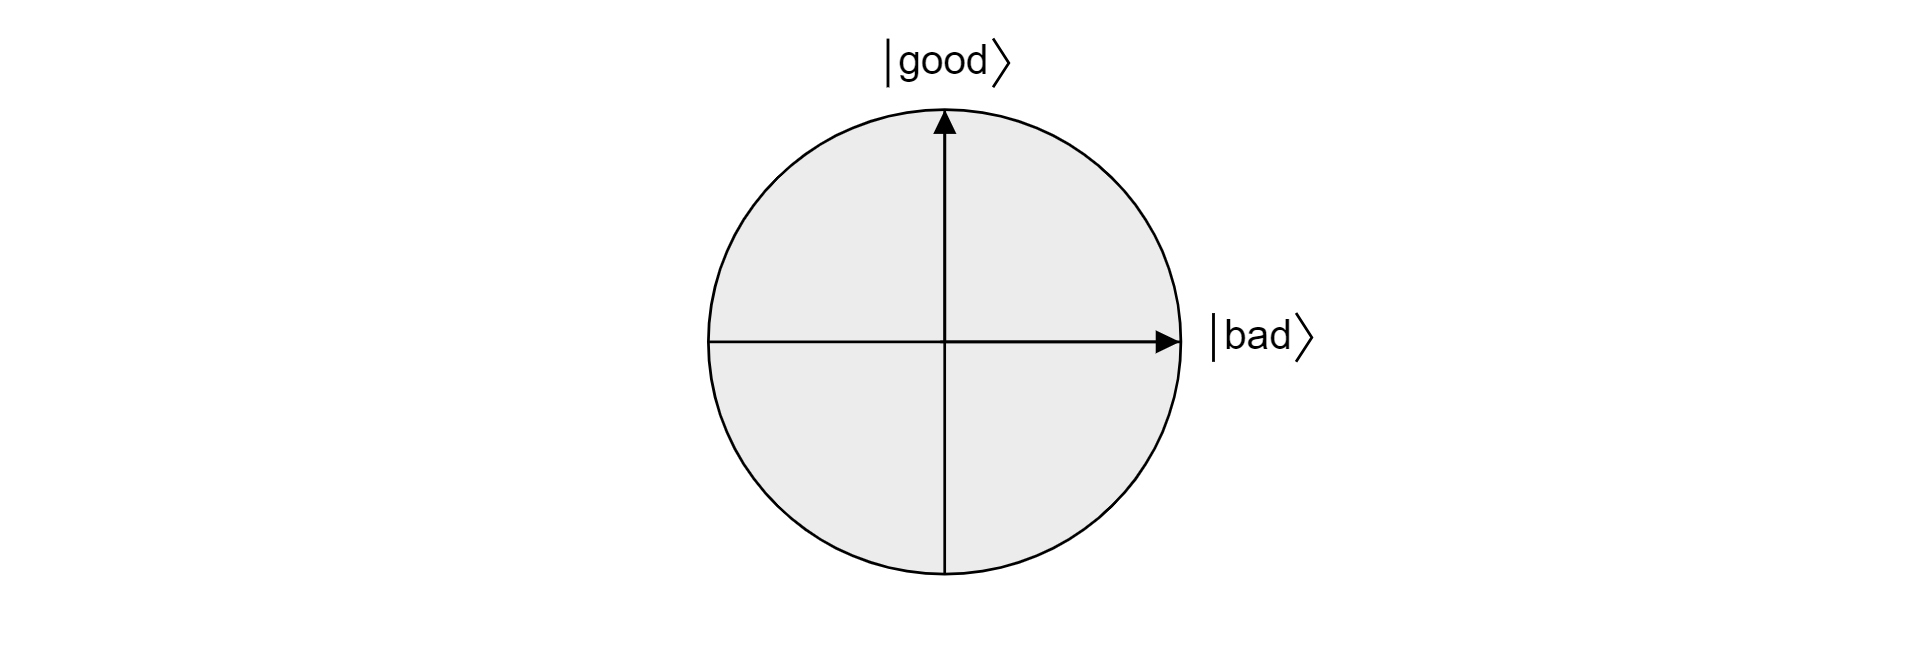 直交する良好ベクトルと不良ベクトルによって投影されるブロッホ球内の平面のプロット。